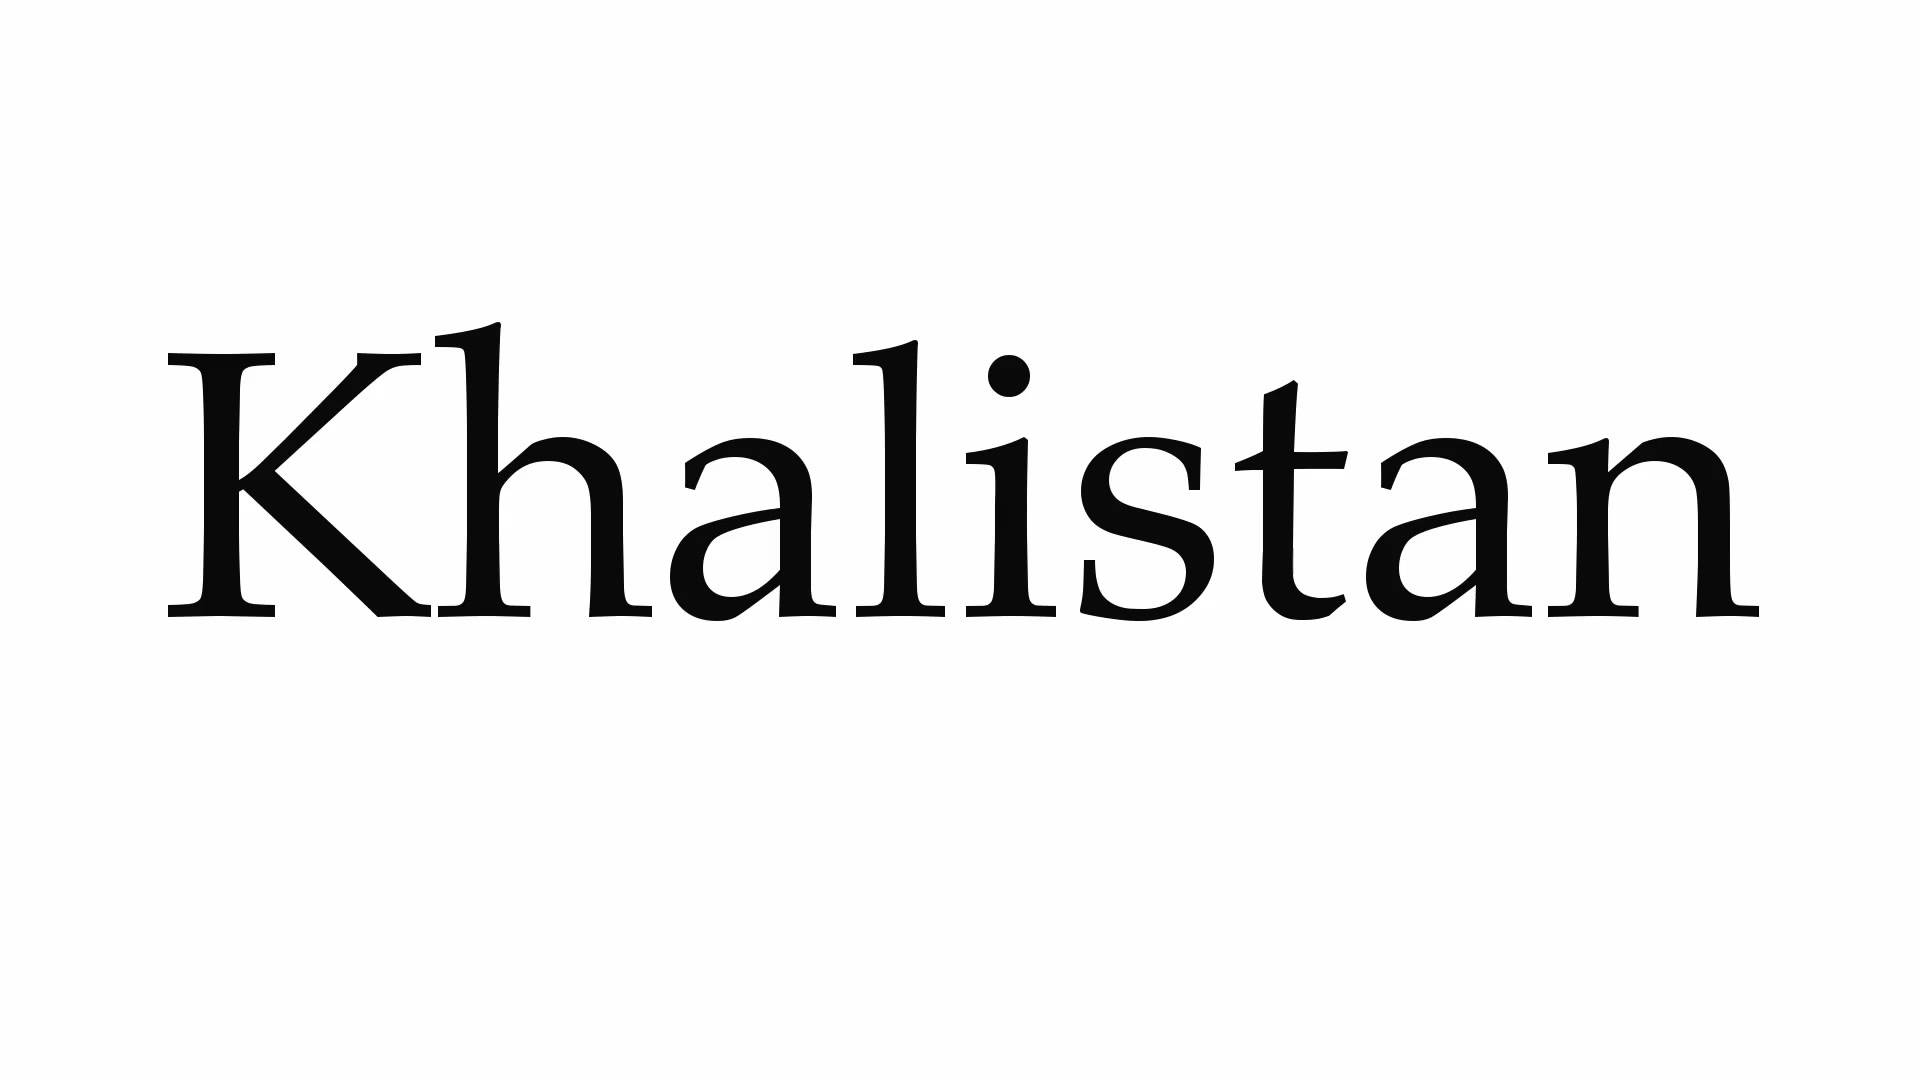 How to Pronounce Khalistan